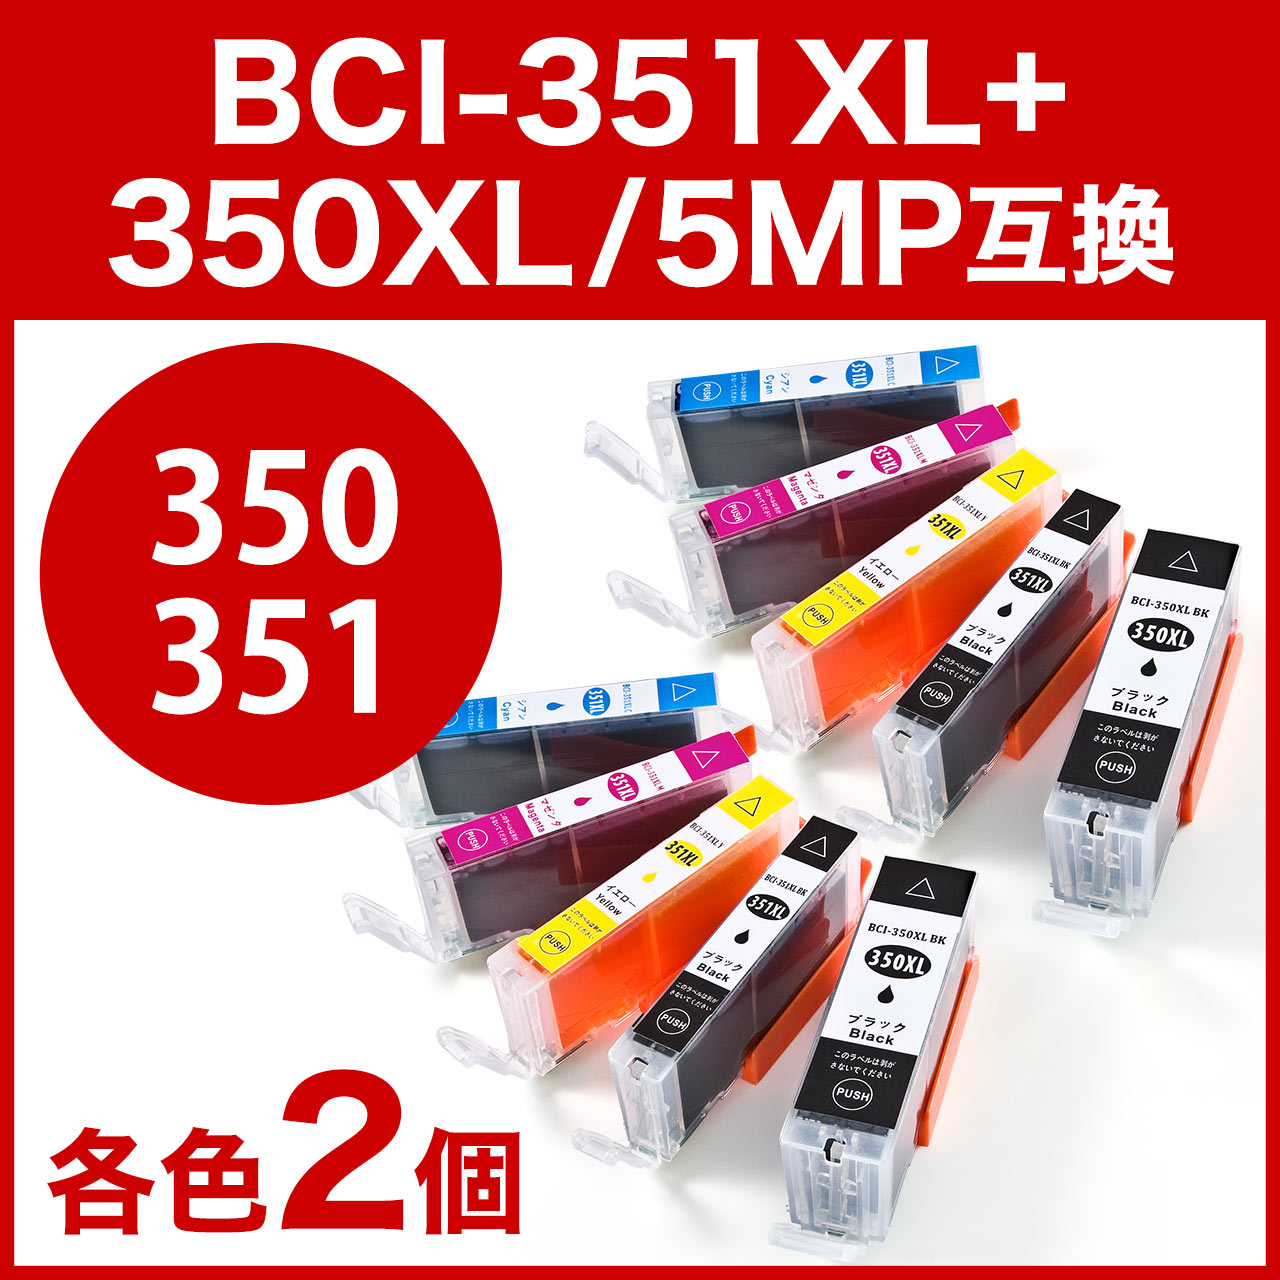 2個セット】互換インク キャノン BCI-351XL+350XL/5MP対応（大容量・5色パック） 302-C3503515Pの販売商品  通販ならサンワダイレクト